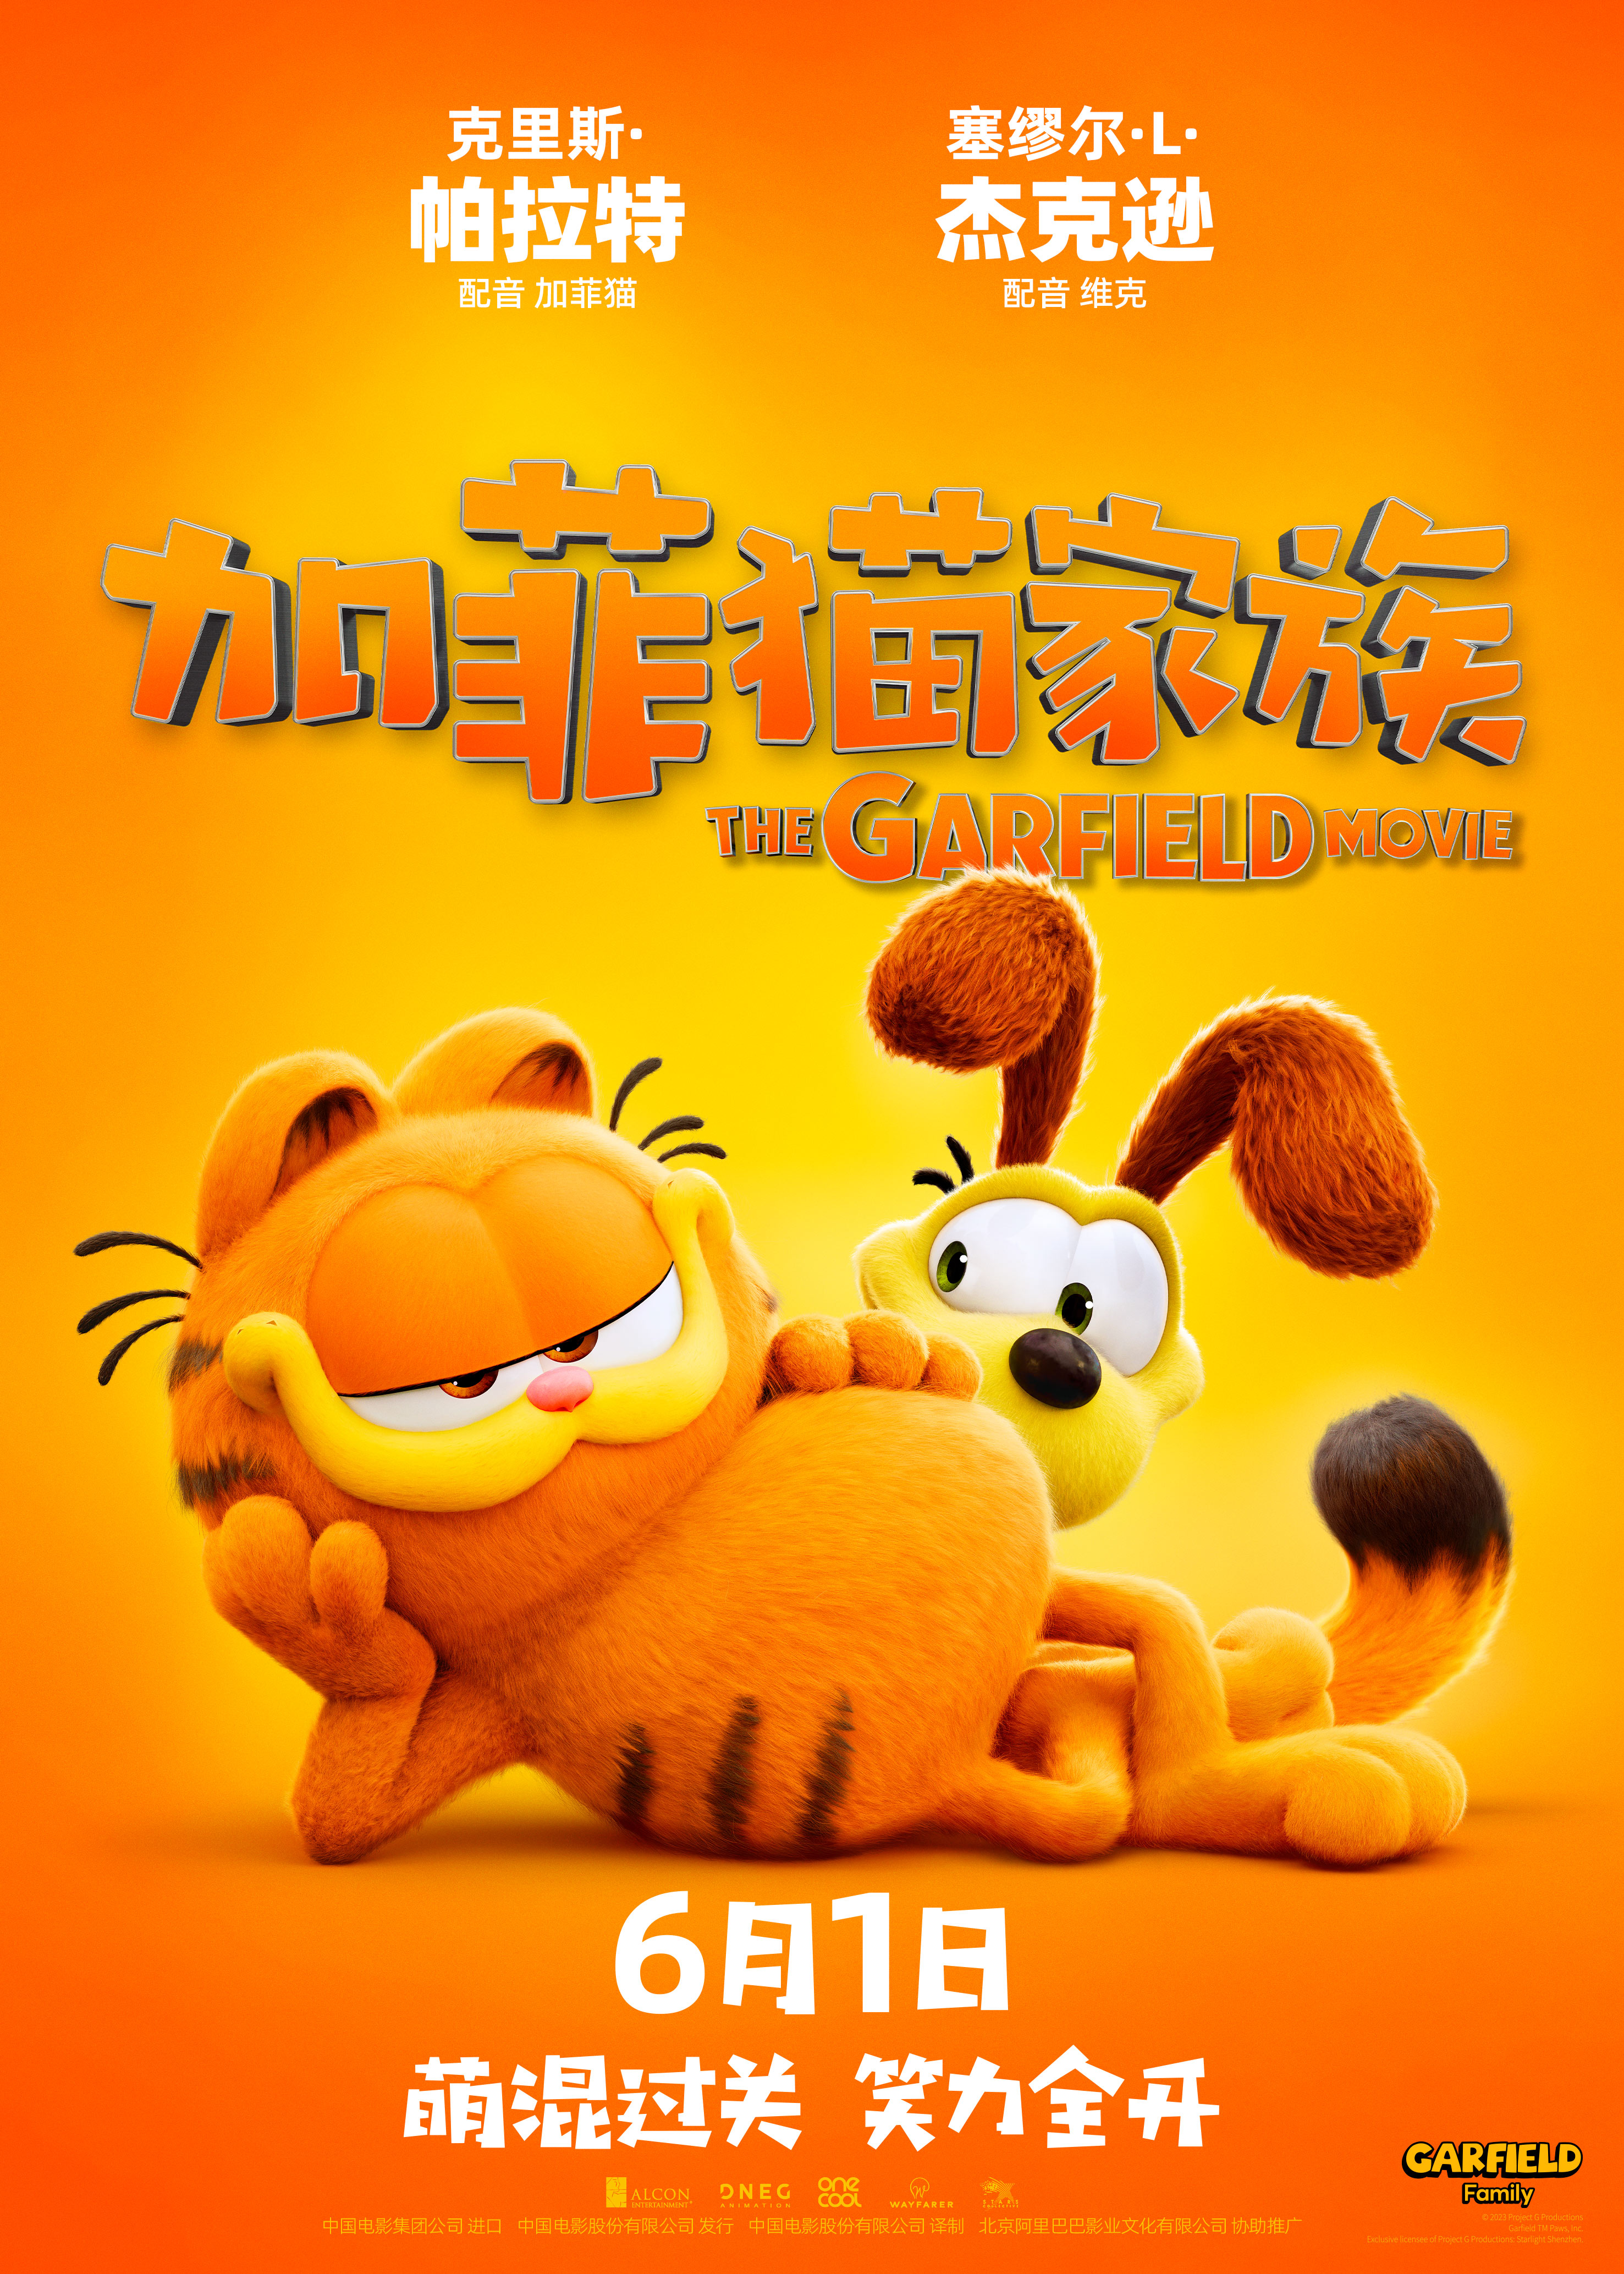 加菲猫家族来了！6月1日国内上映，萌翻天的大小加菲猫三连击